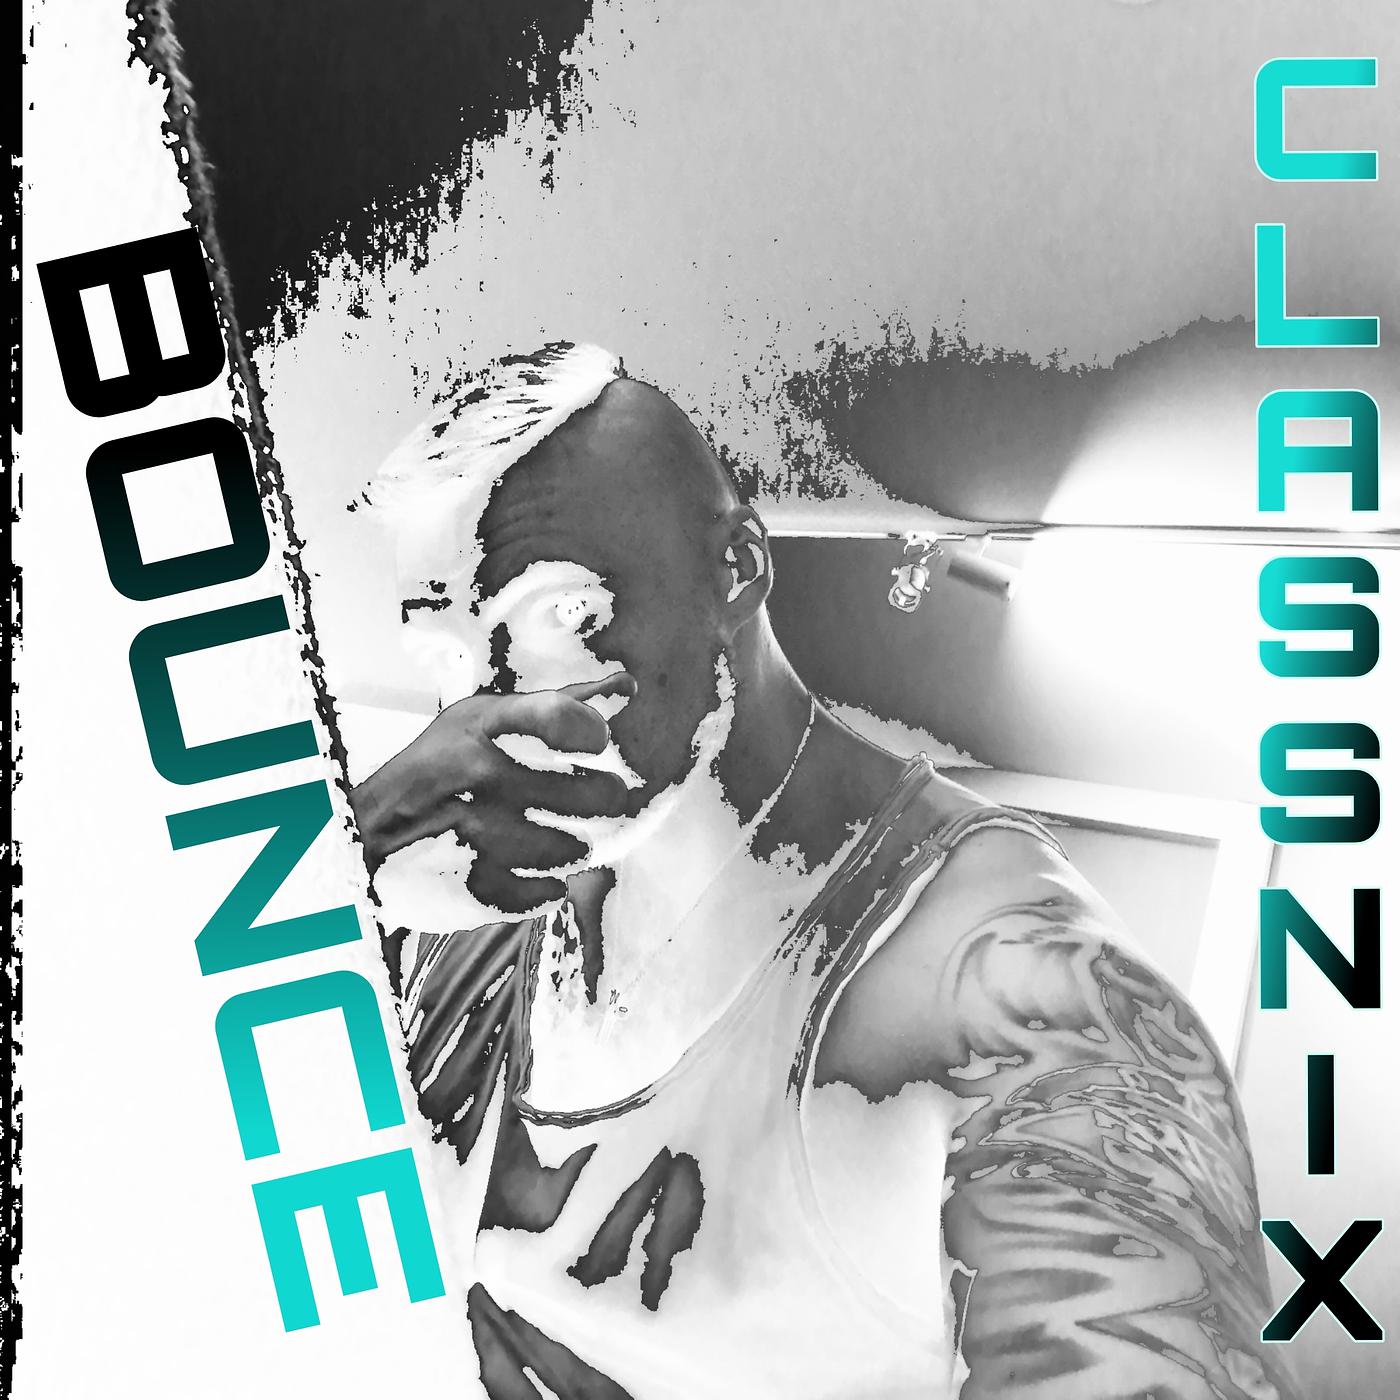 Постер альбома Bounce